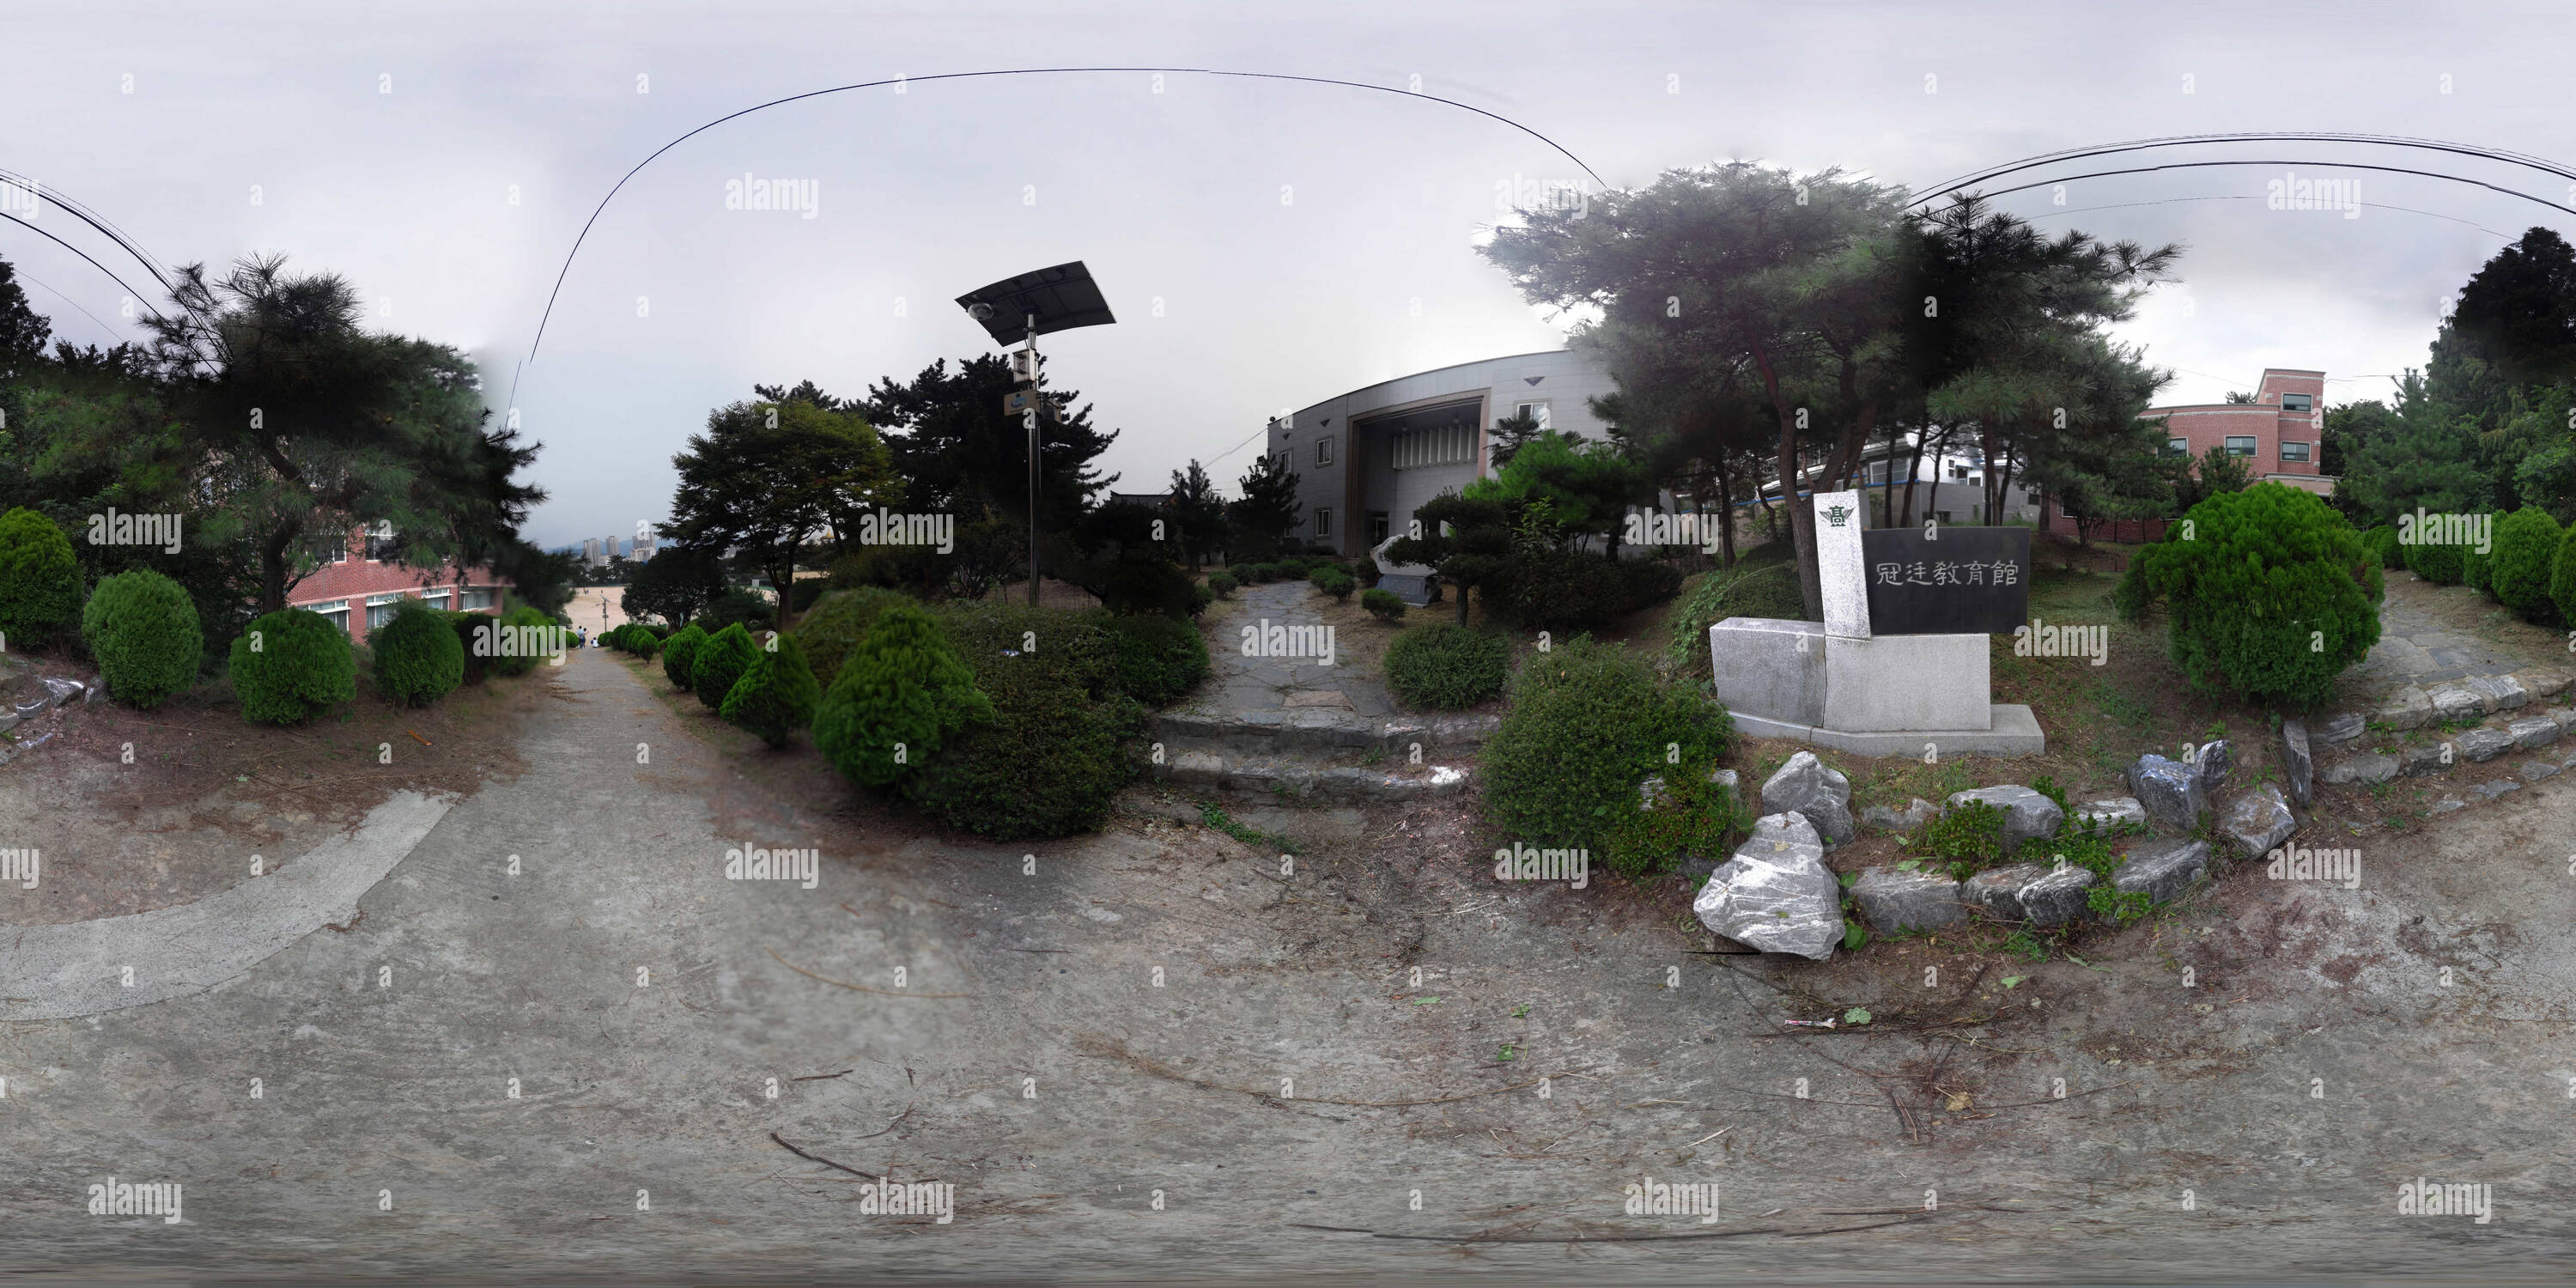 Visualizzazione panoramica a 360 gradi di Masan Alta scuola